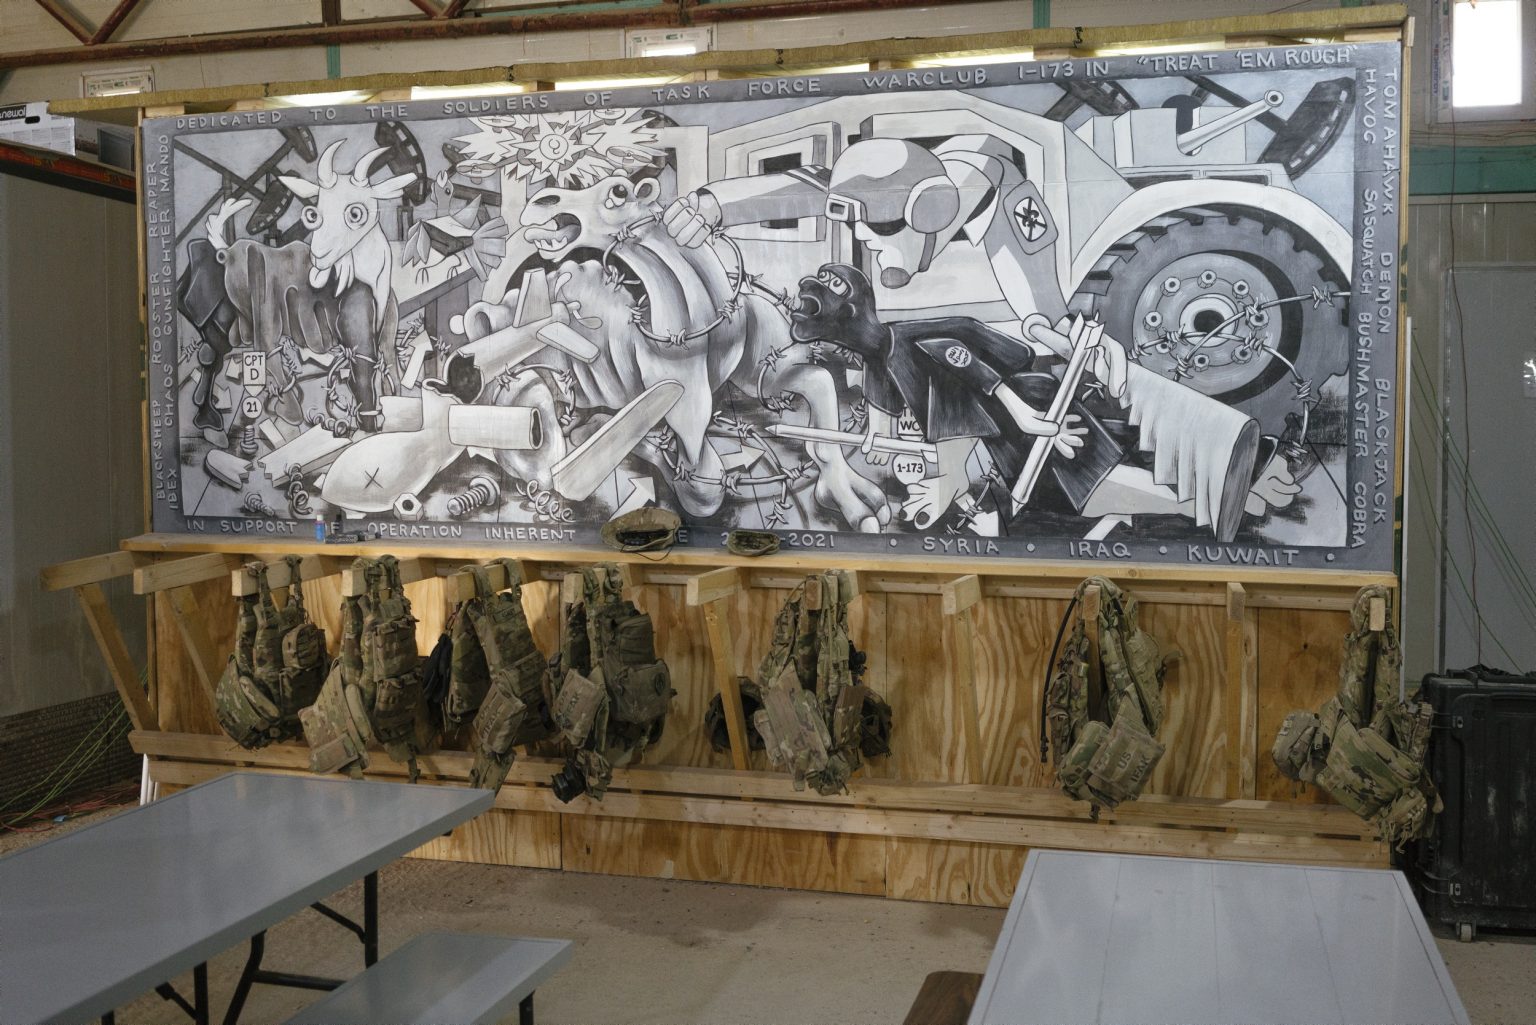 SYRIA. August 24, 2021 - A mural painted inside the command operation center of a remote U.S. Army combat outpost in northeastern Syria known as RLZ.

SIRIA. 24 agosto 2021 - Un murales dipinto all'interno del centro operativo di comando di un avamposto dell'esercito americano nel nord-est della Siria, noto come RLZ.